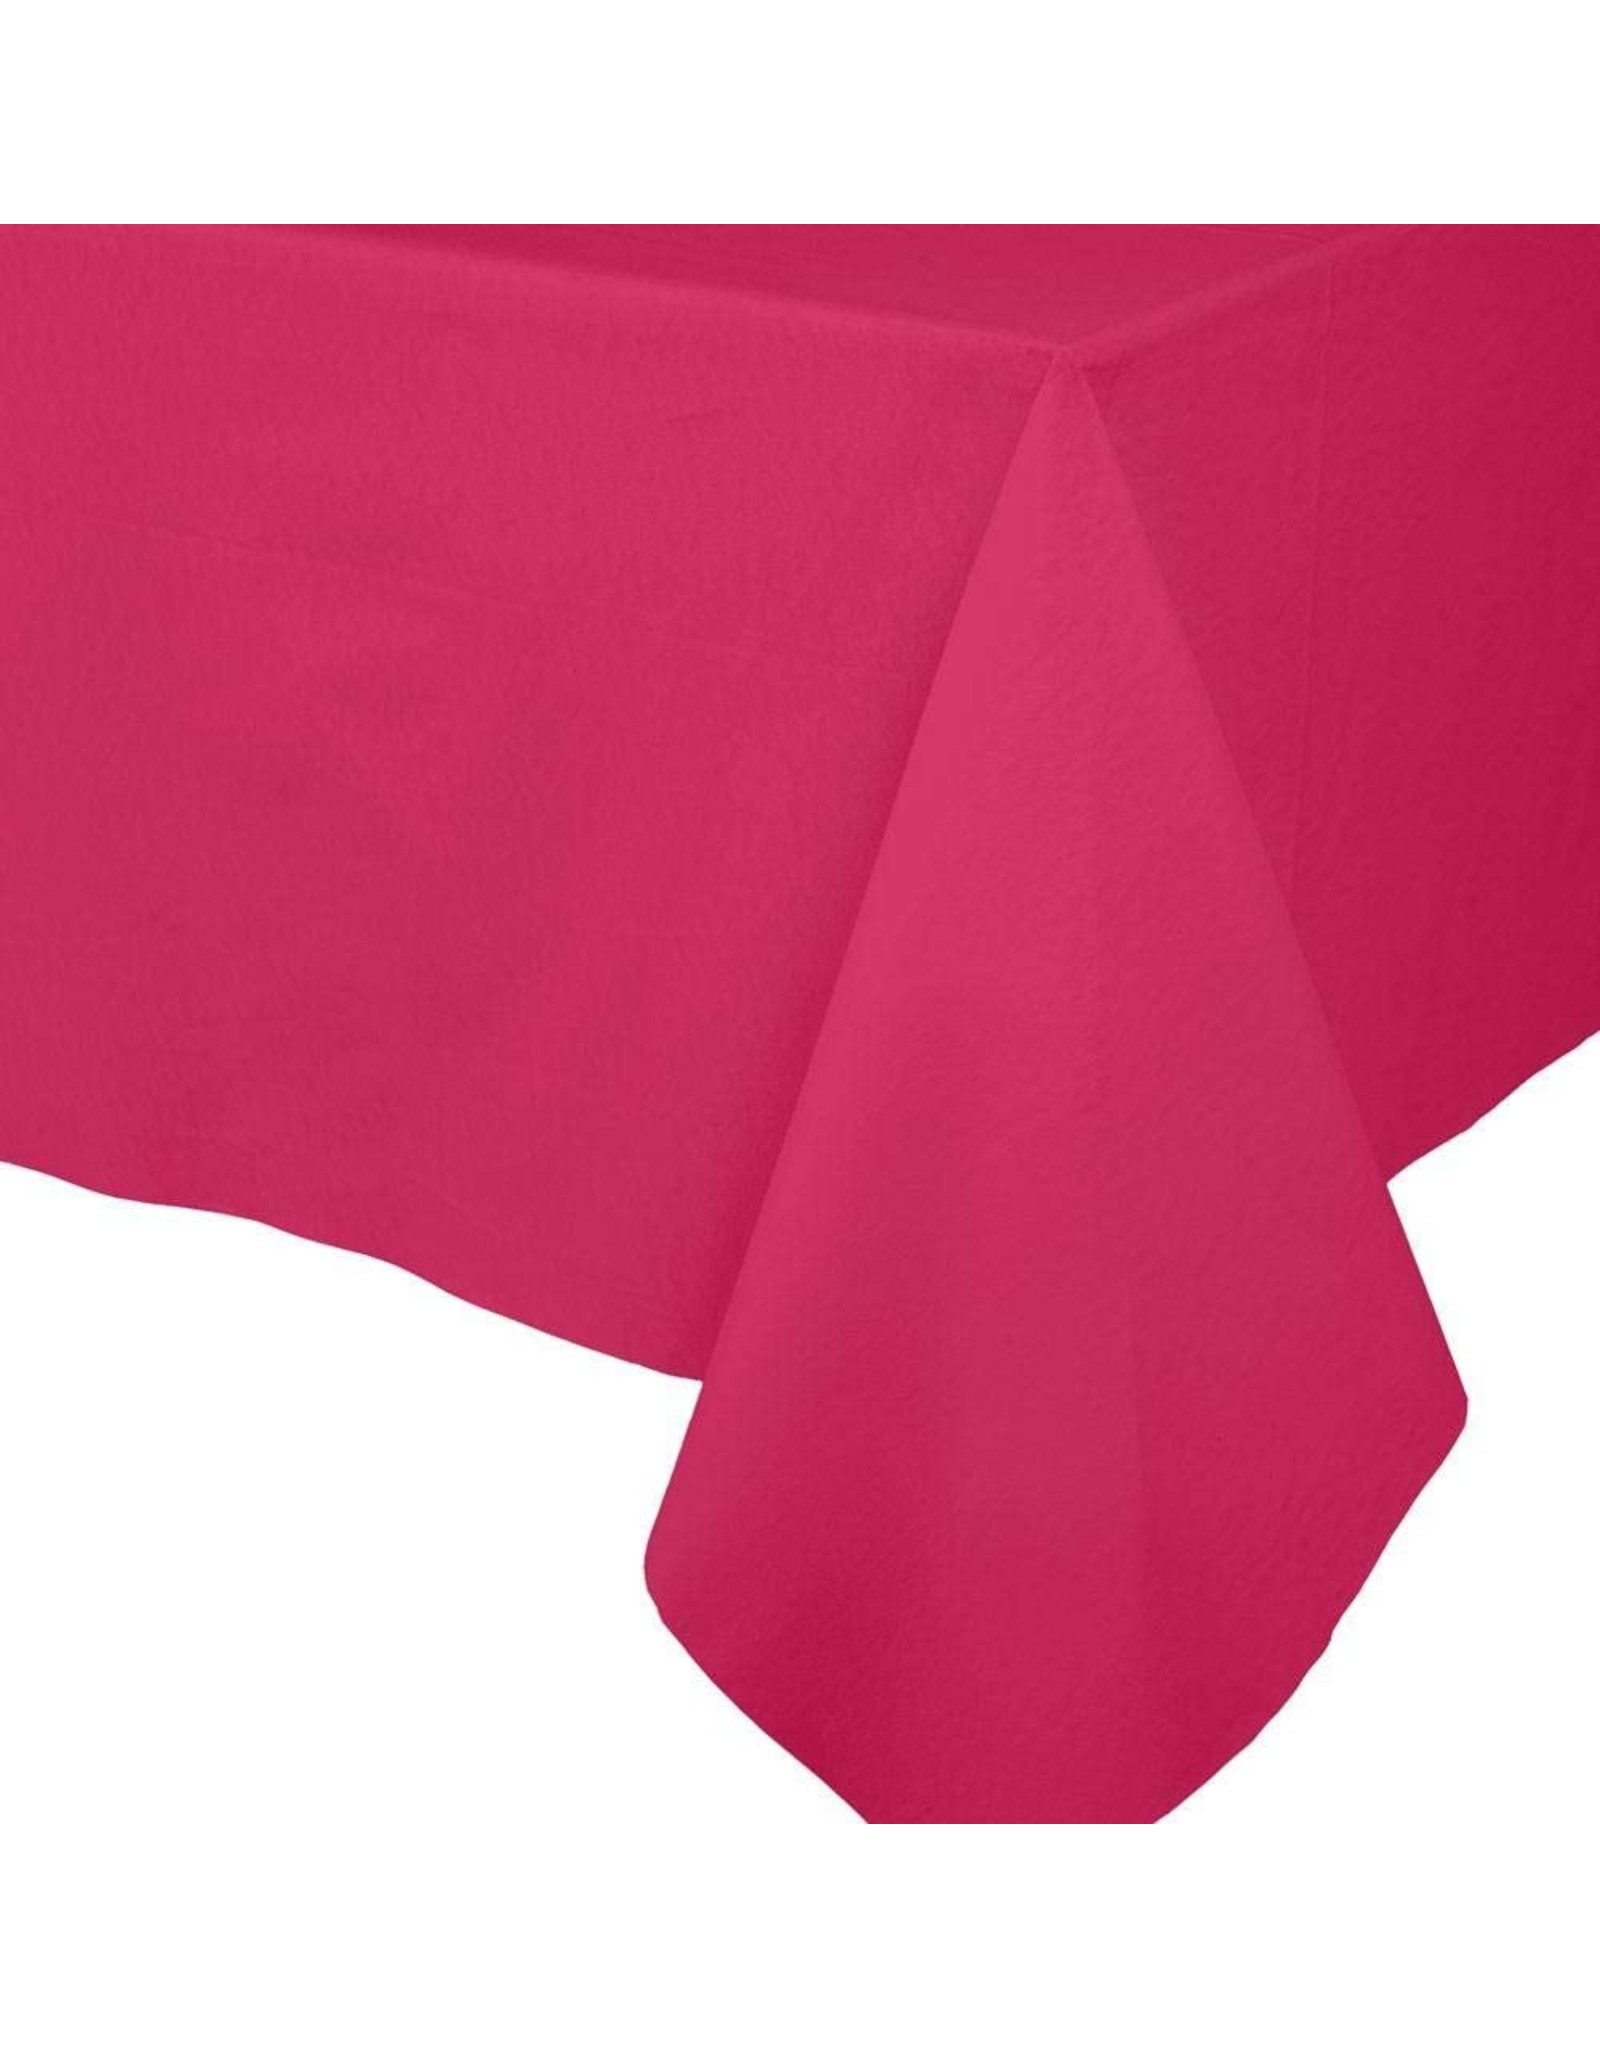 Caspari Paper Linen Solid Table Covers In Fuchsia